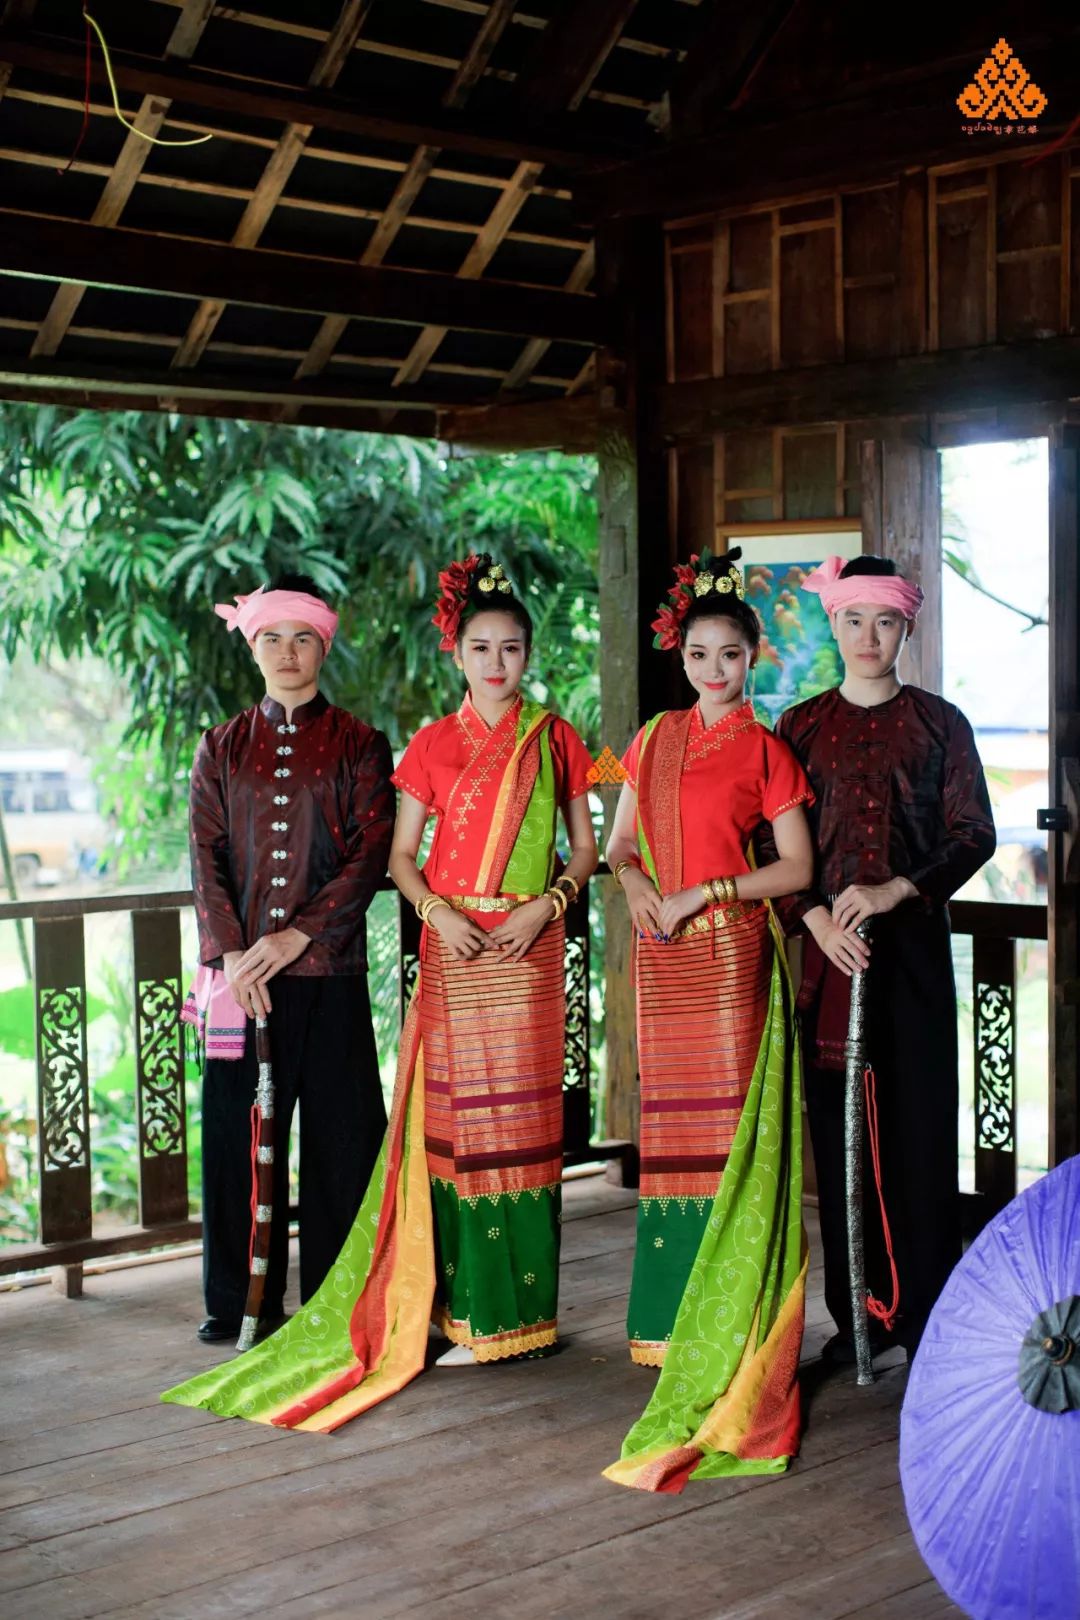 择一城终老,遇一人白首!——傣族传统新郎新娘服饰.